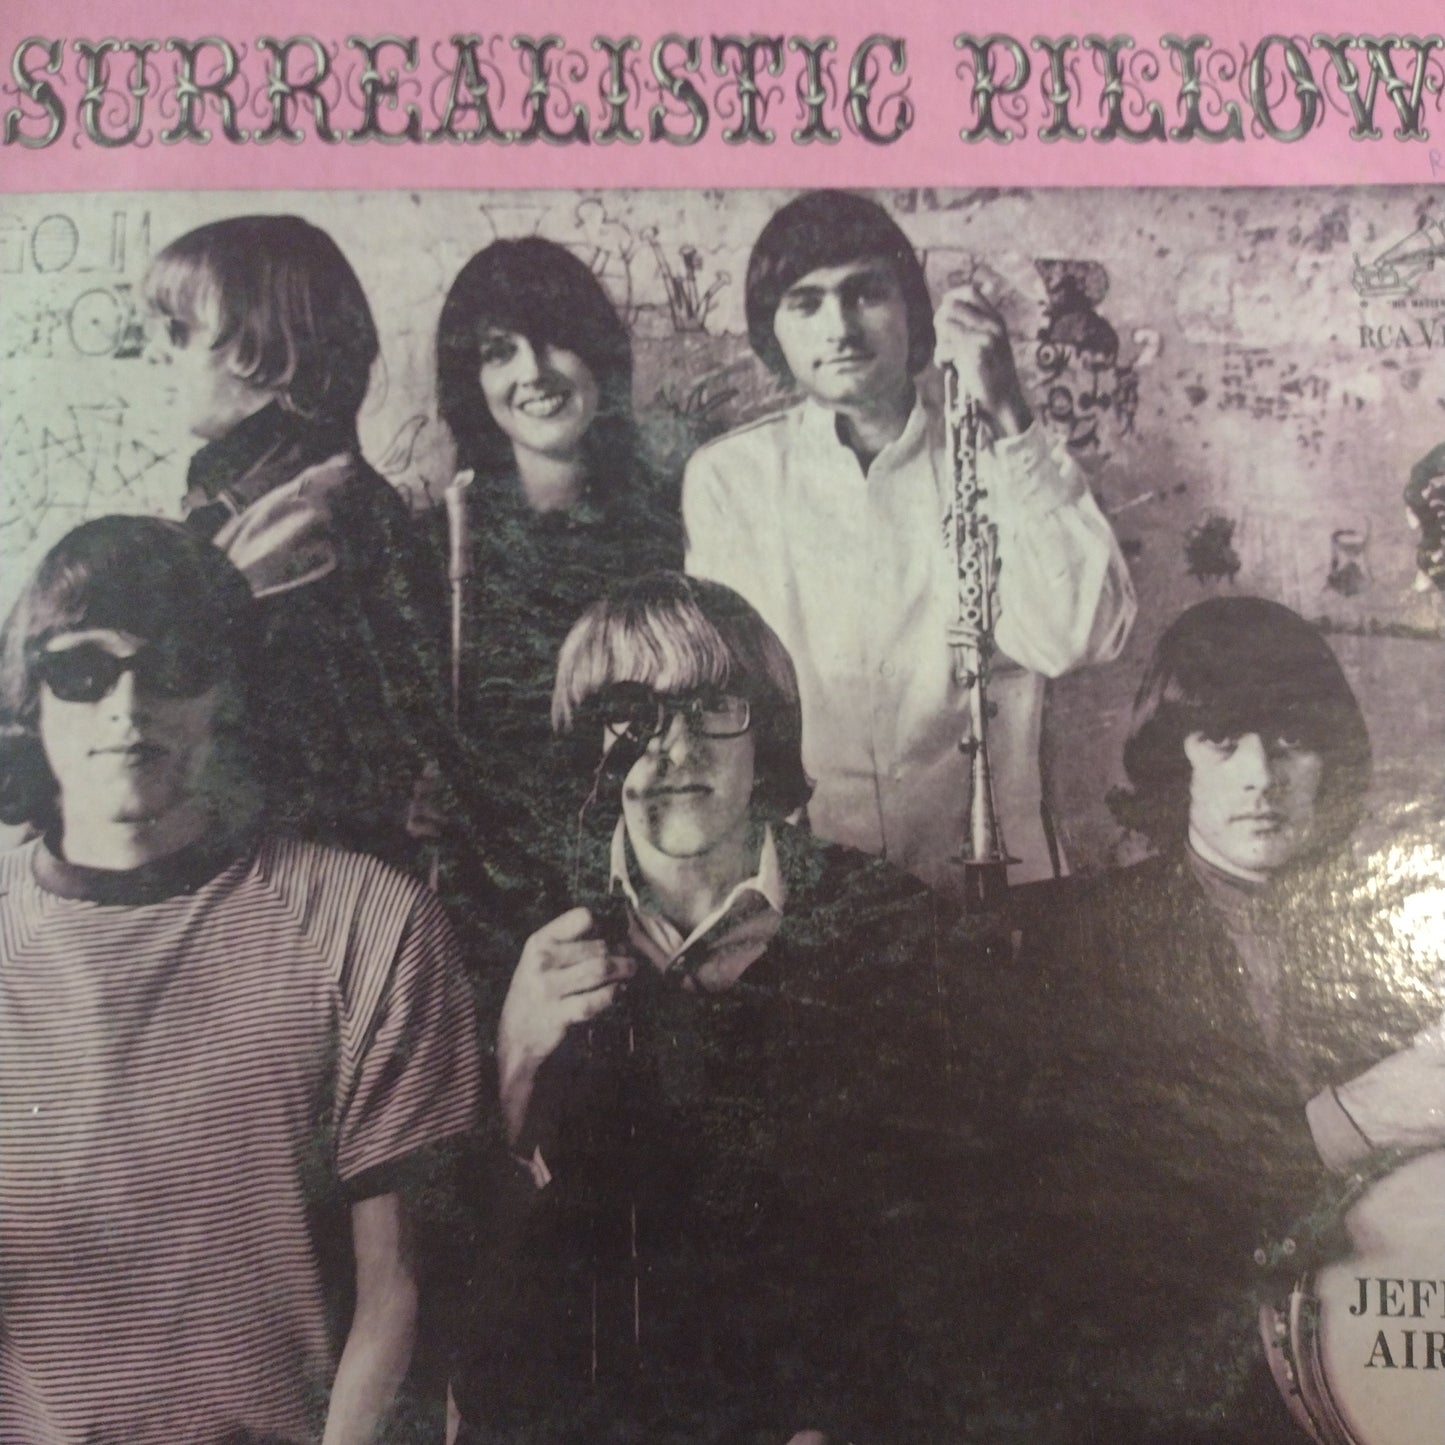 Surrealistic Pillow LP